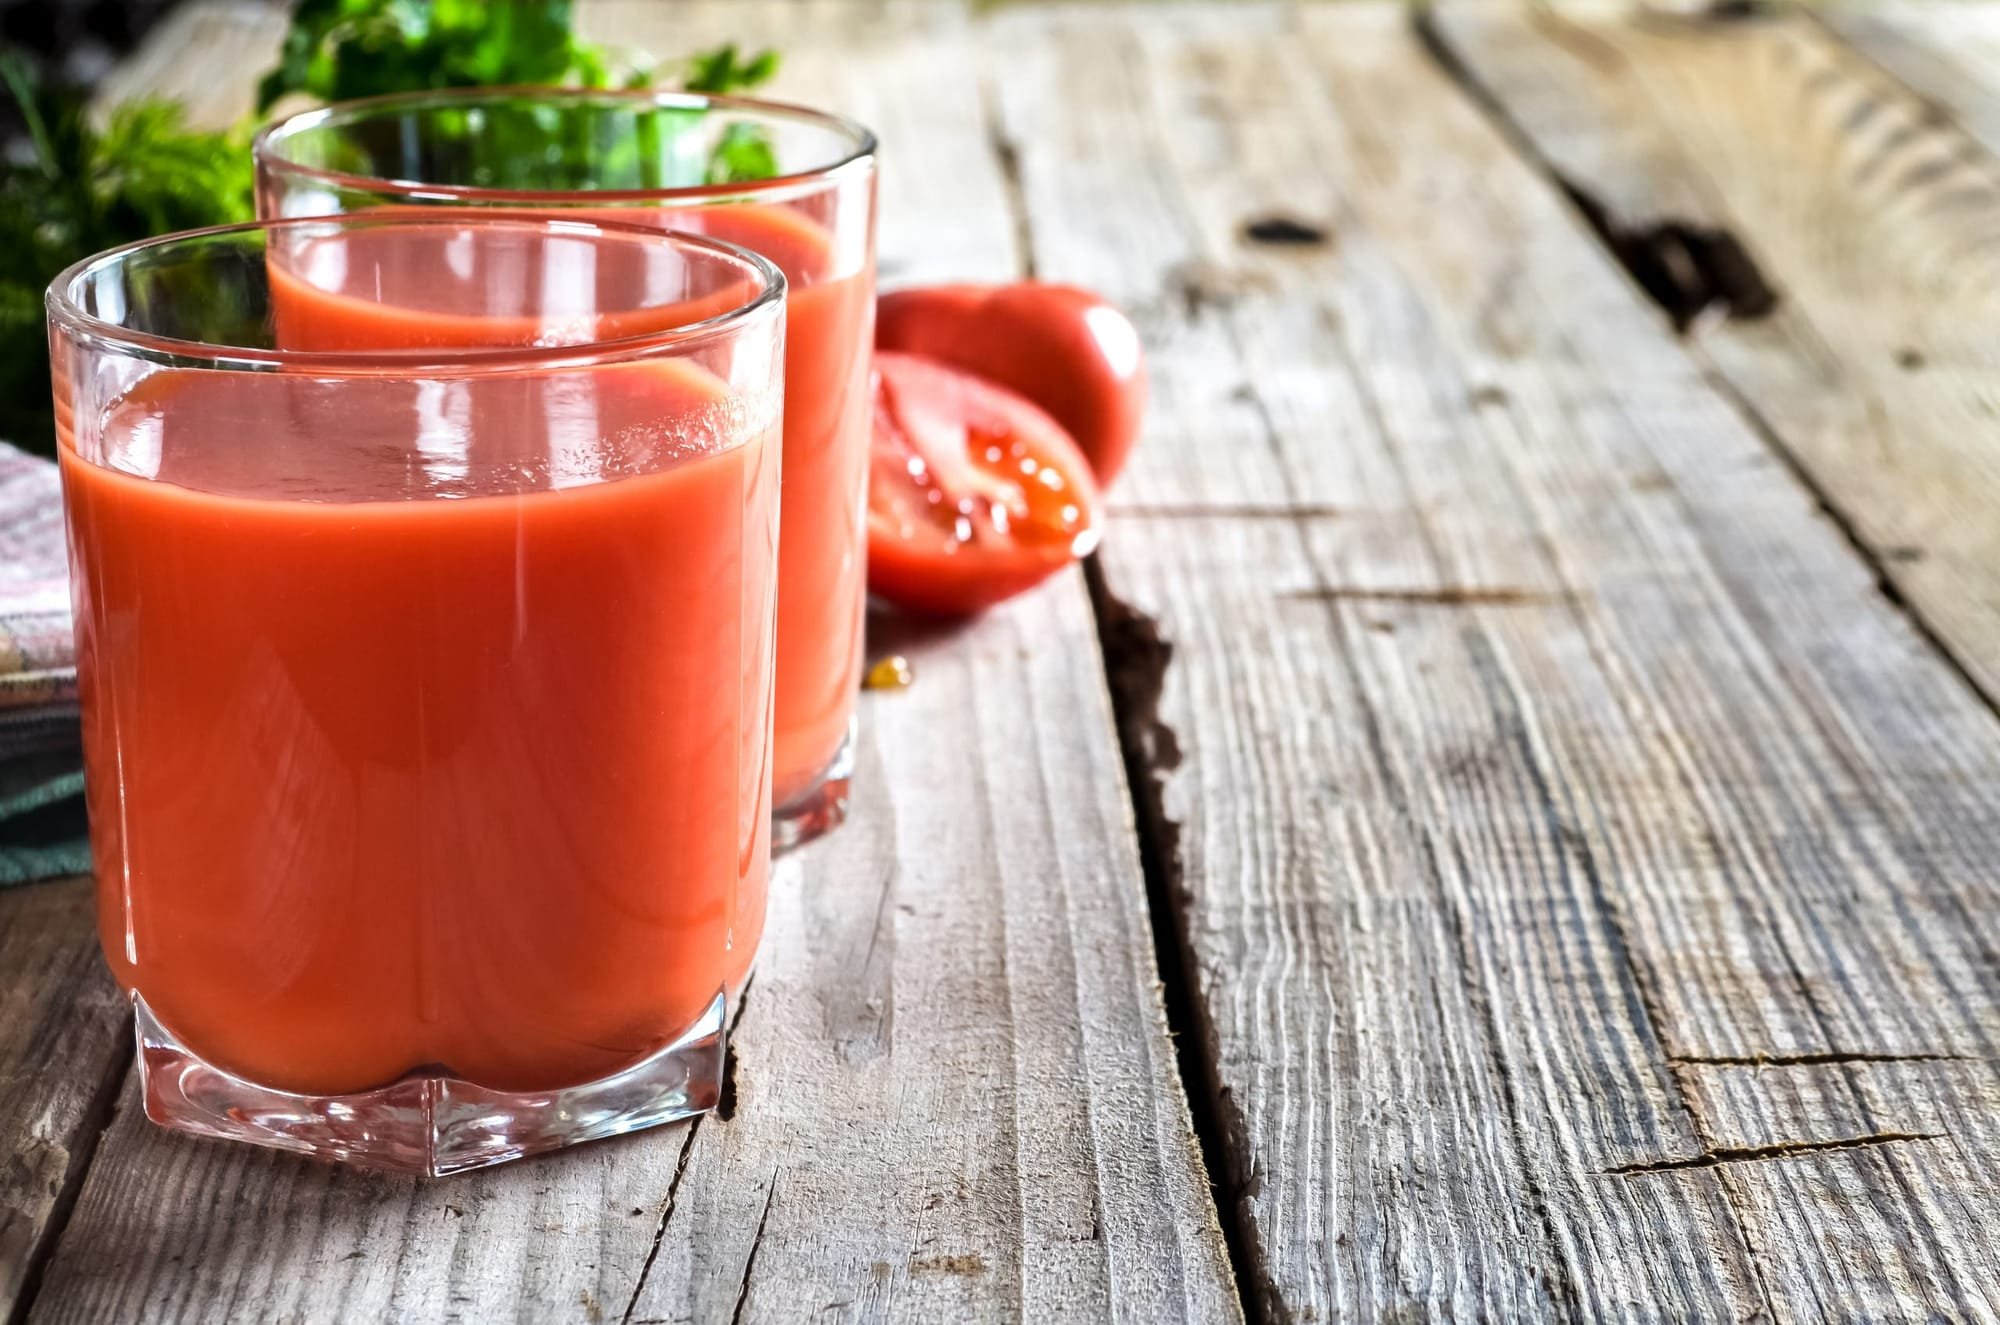 تناول عصير الطماطم يوميا قد يساعد في خفض خطر "القاتل الصامت"